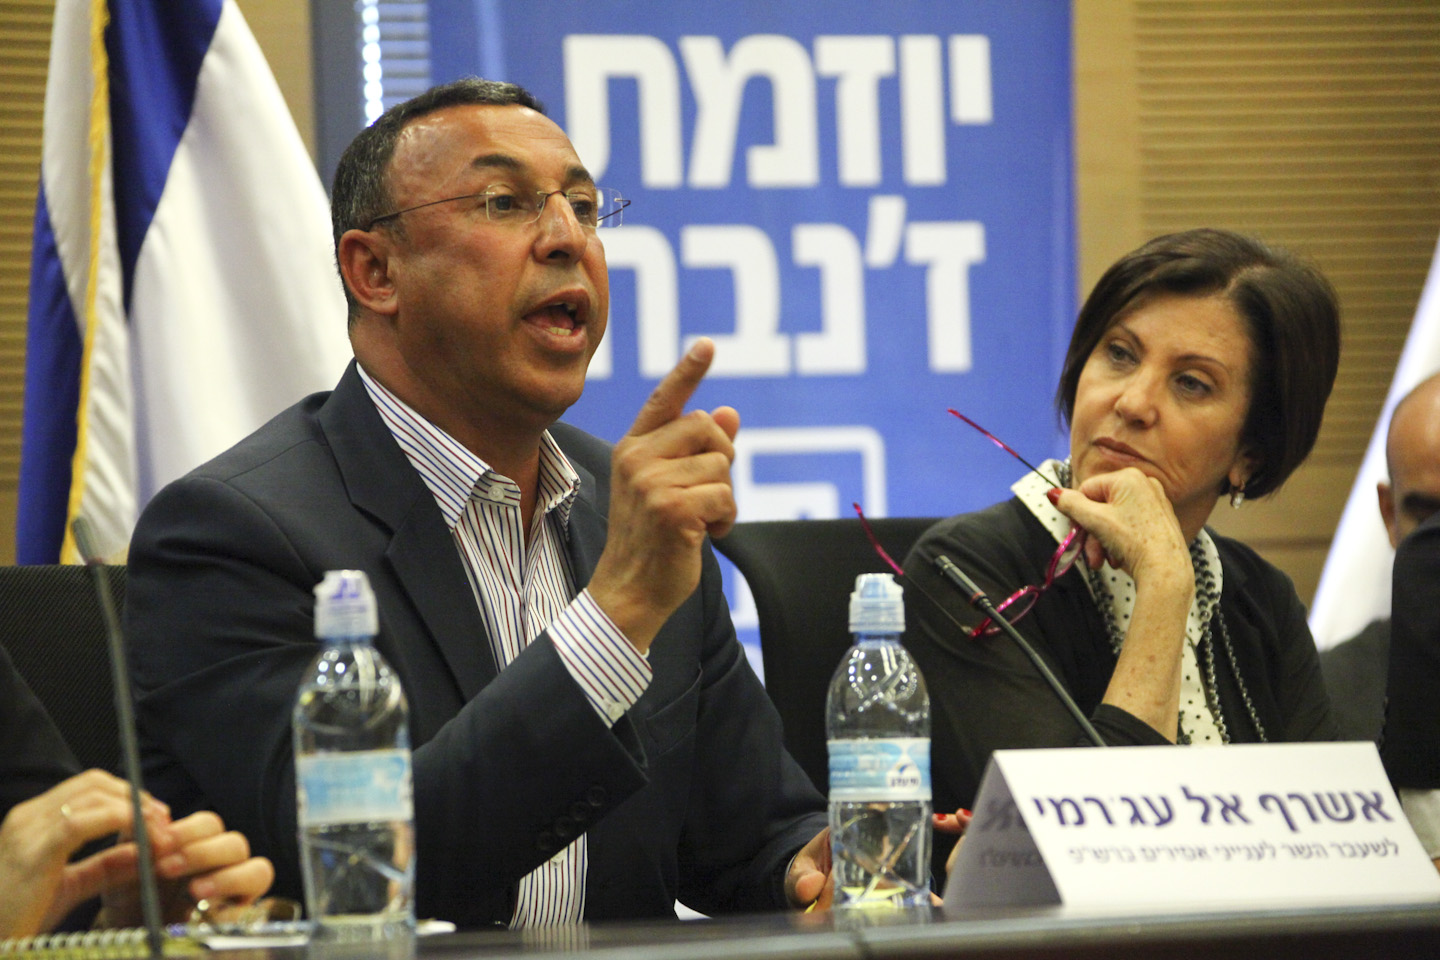 Palestinian Minister Ashraf al Ajrami (L) Speaks at the Knesset, the Israeli parliament in Jerusalem on Monday, 8 July, 2013. Photo by Mati Milstein/POOL/Flash90 *** Local Caption *** ëðñú
ôìñèéðé
æäáä âì àåï
æäáä âìàåï
àùøó àì òâ'øîé
åòãä